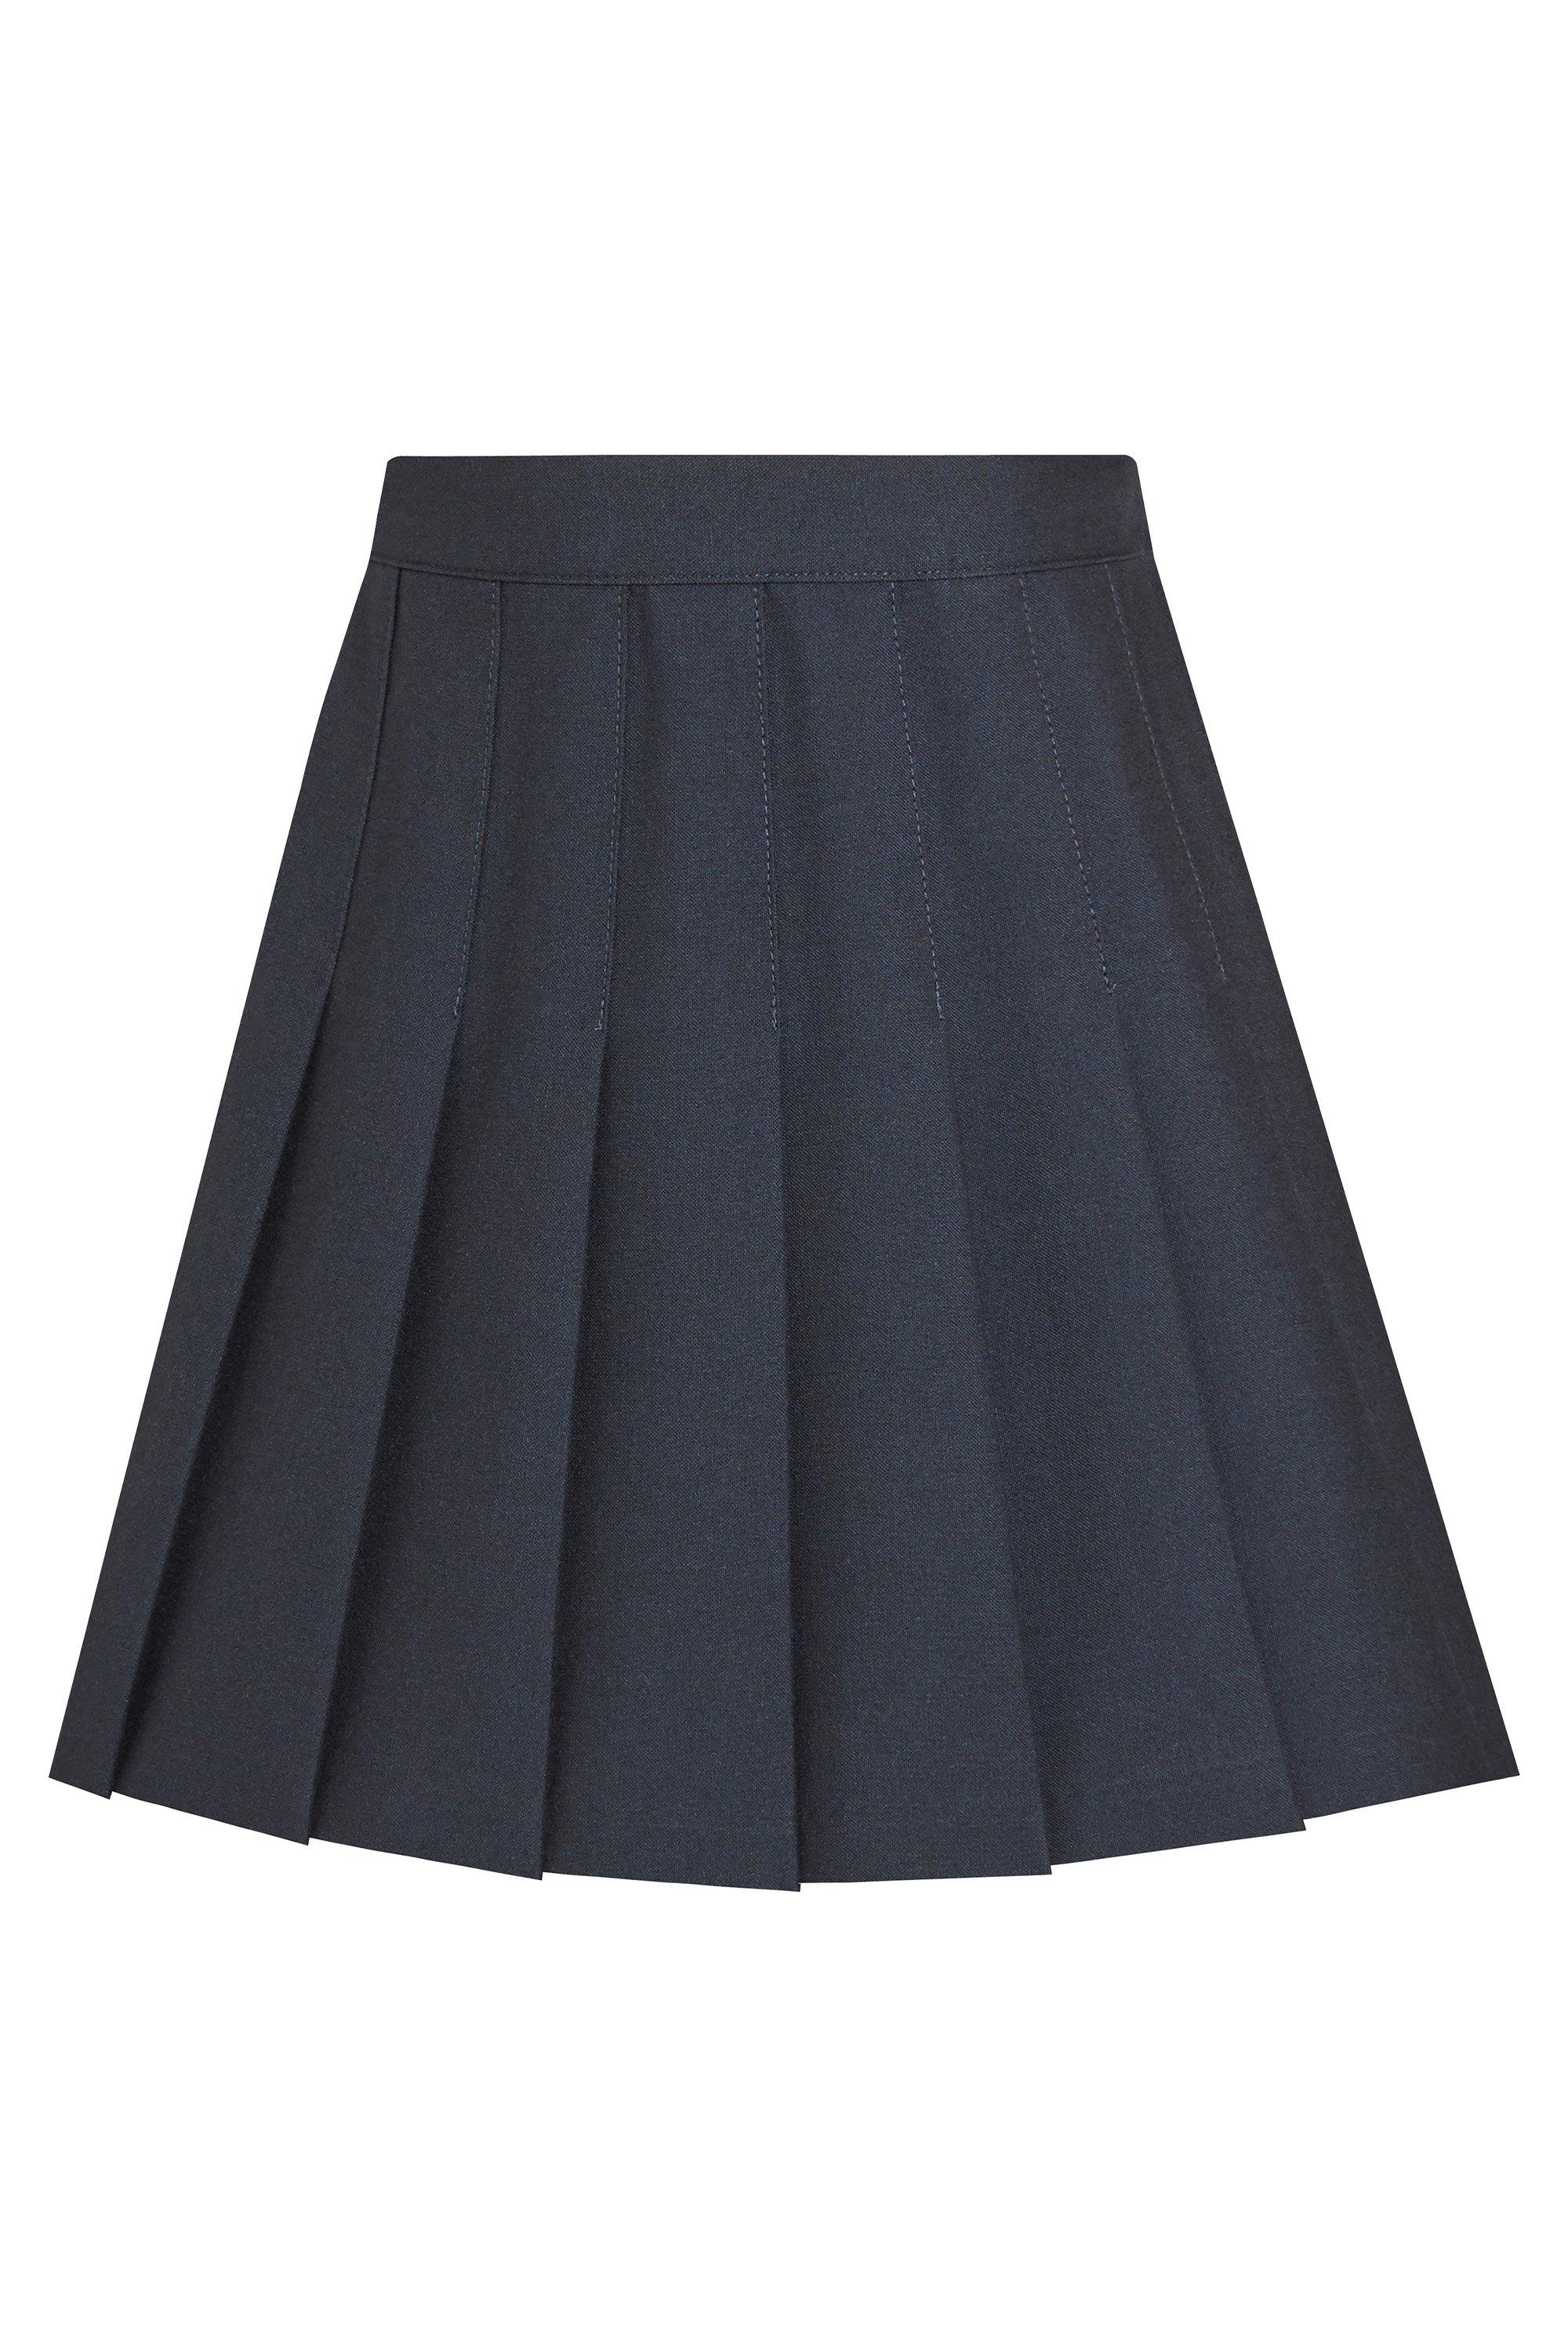 Плиссированная школьная юбка David Luke, темно-синий школьная юбка для девочек японский стиль jk униформа японская мода костюм моряка колледжа плиссированная аниме школьная форма